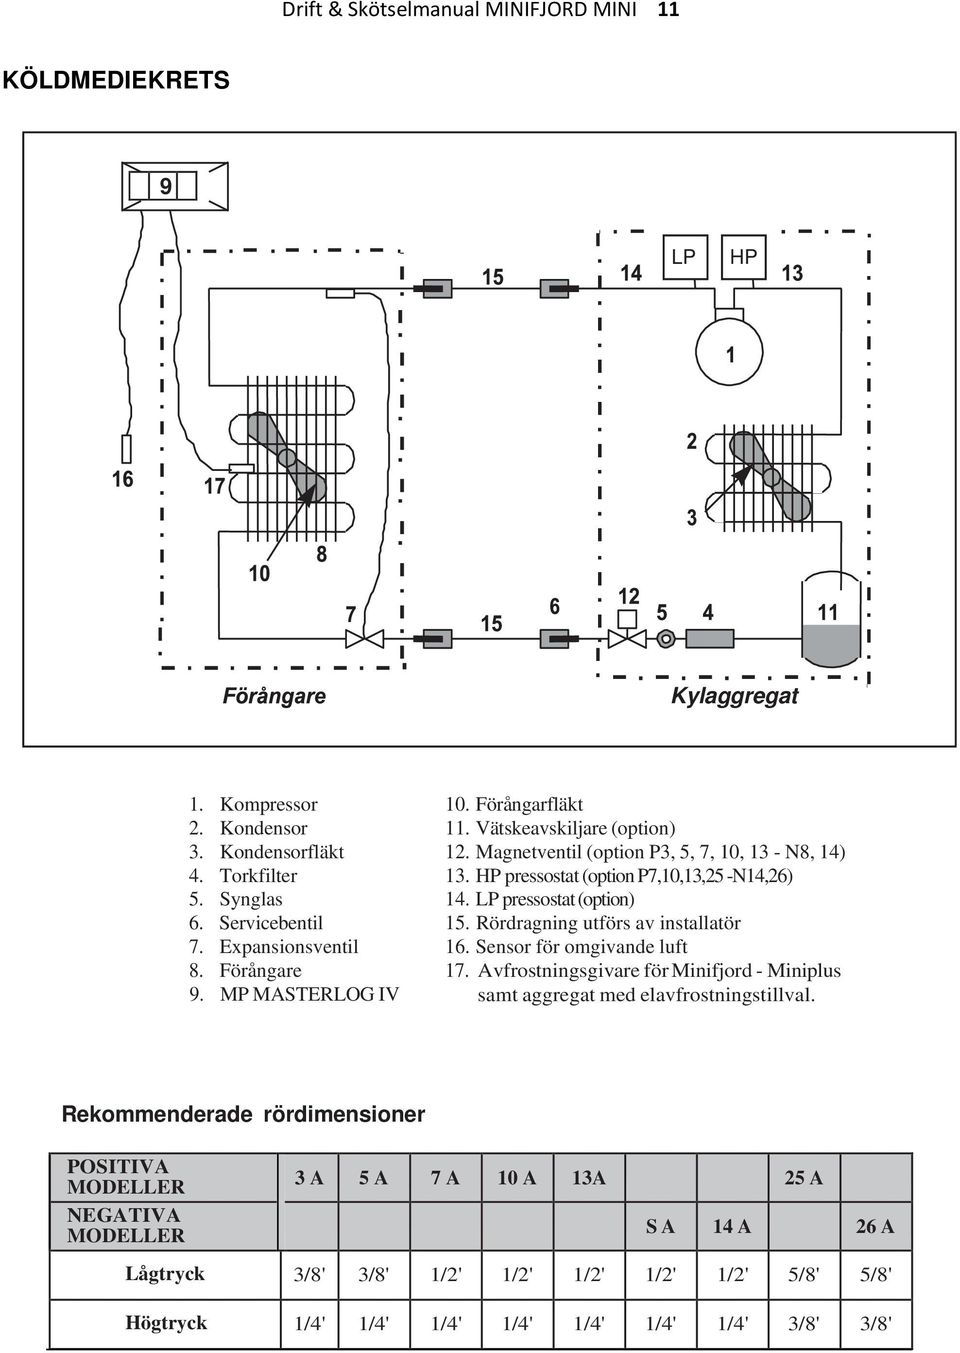 LP pressostat (option) 15. Rördragning utförs av installatör 16. Sensor för omgivande luft 17. Avfrostningsgivare för Minifjord - Miniplus samt aggregat med elavfrostningstillval.